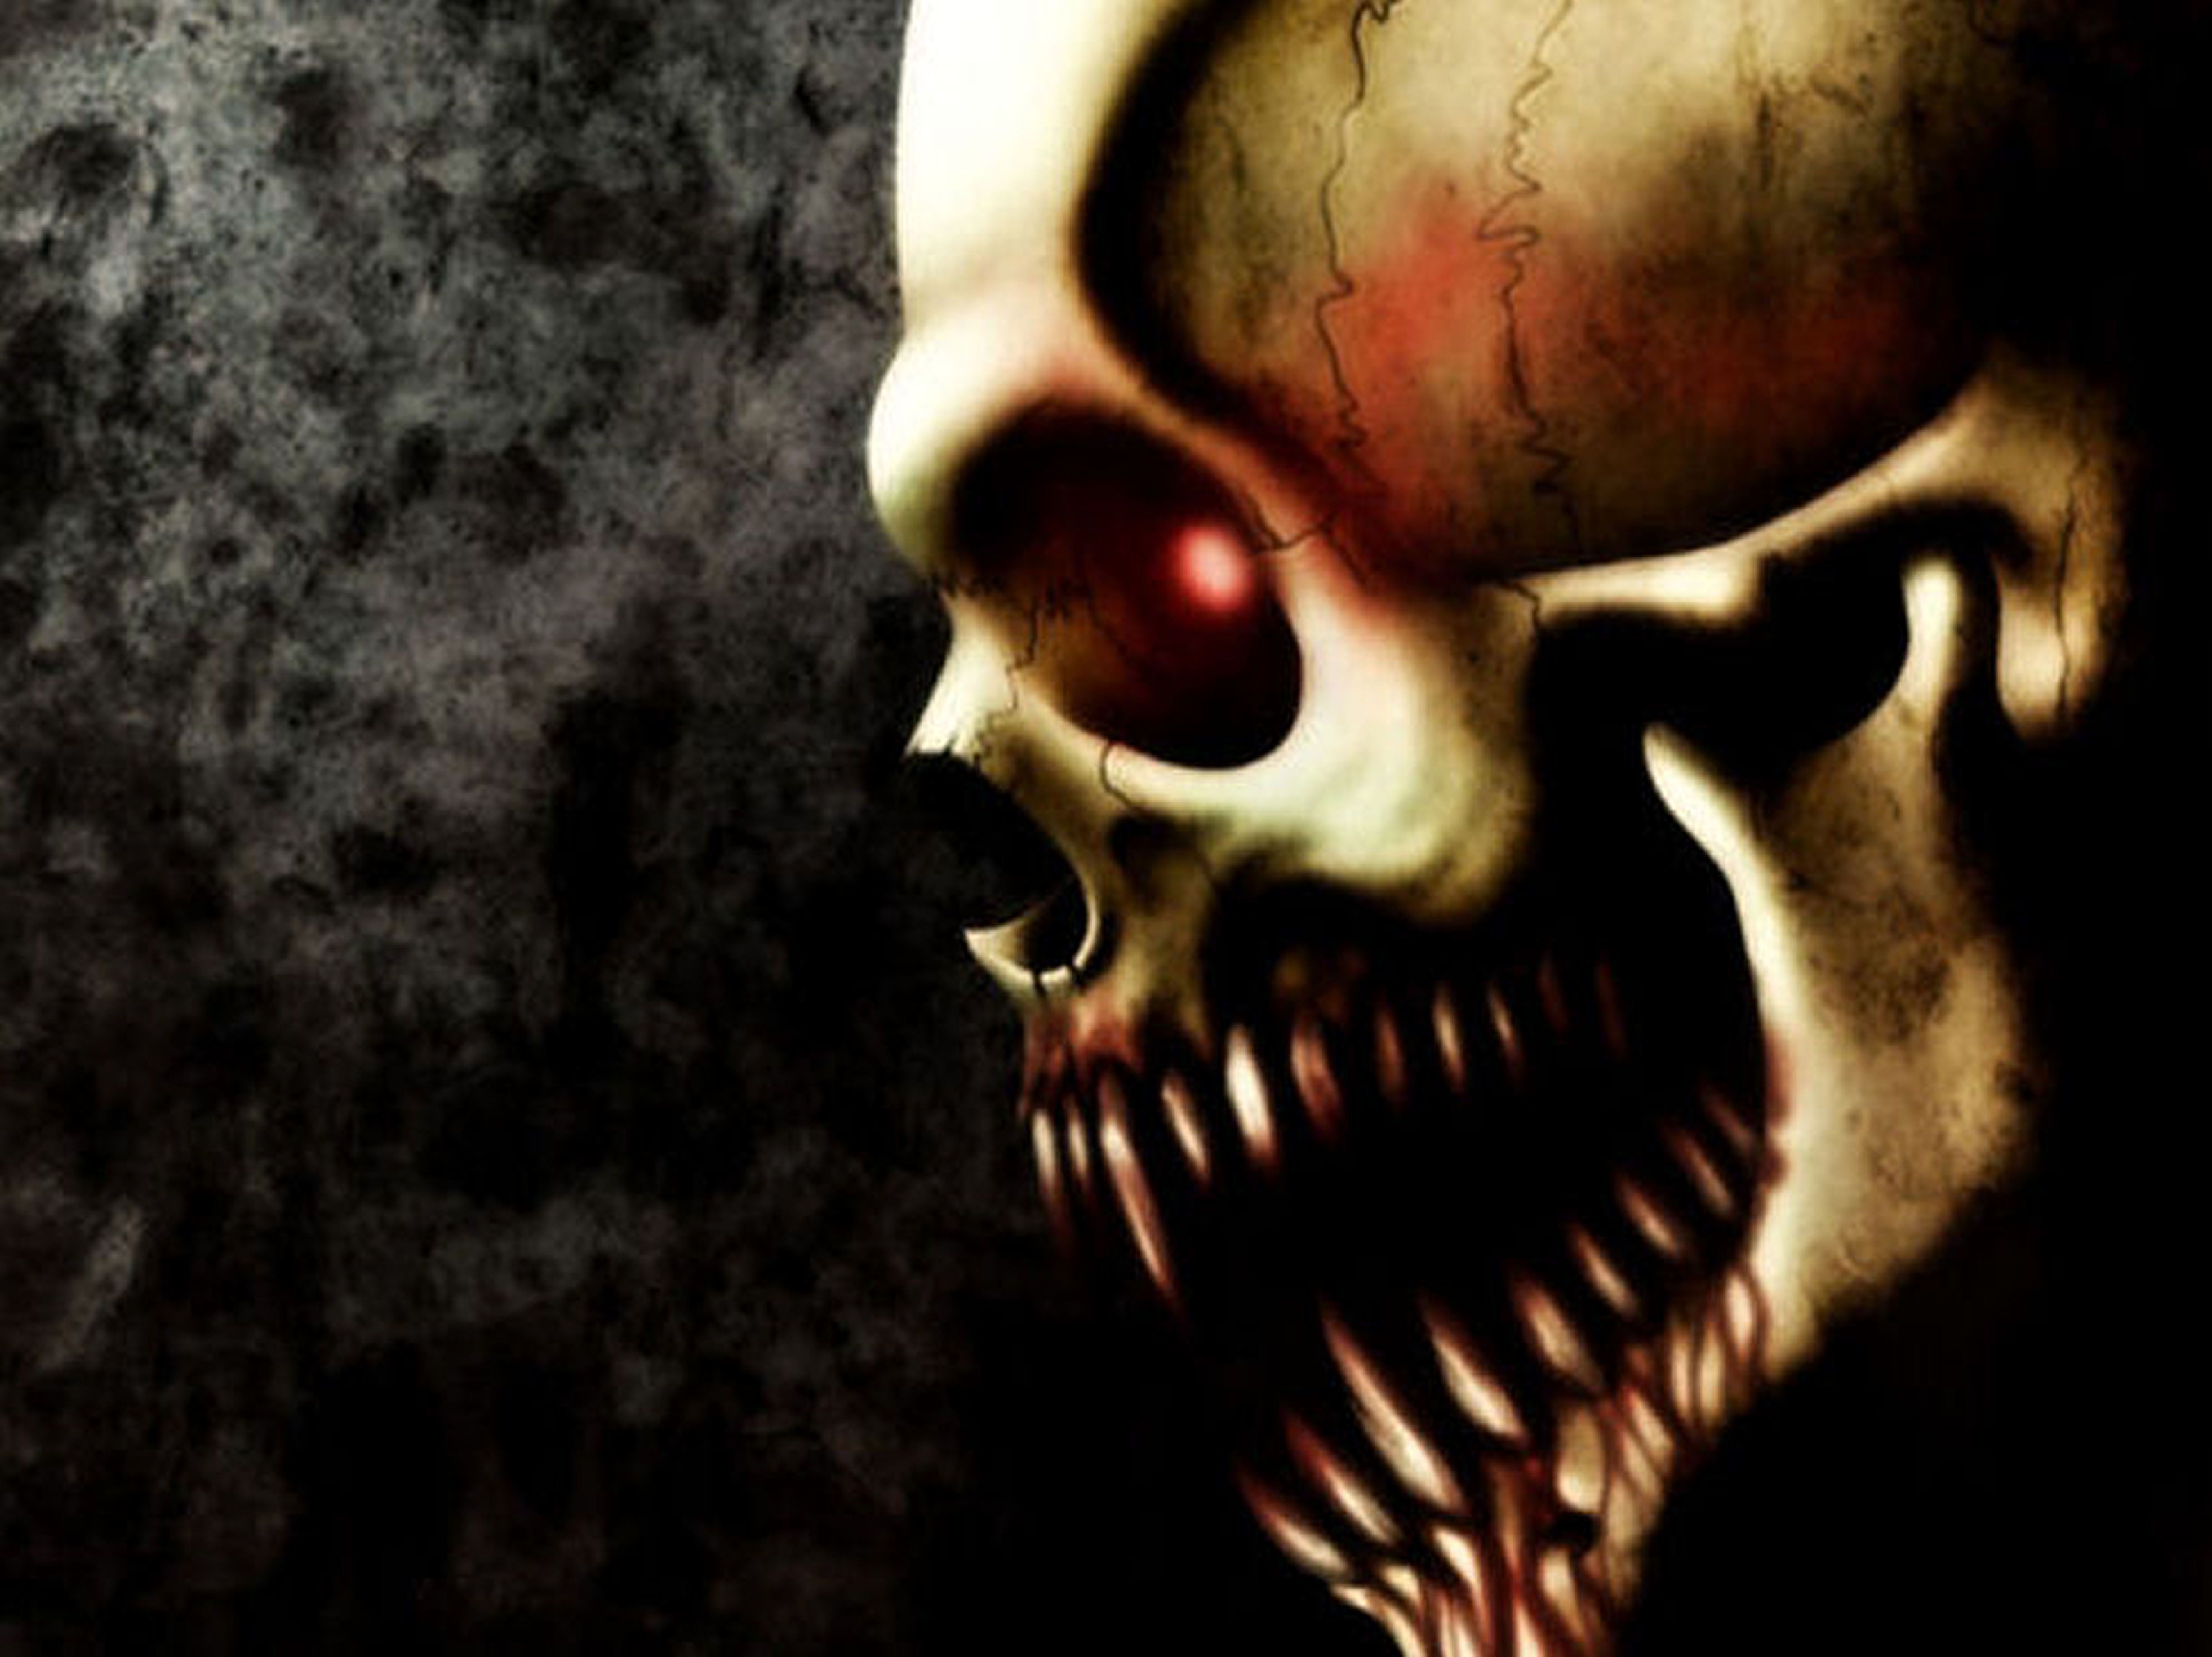 demonic skull wallpaper